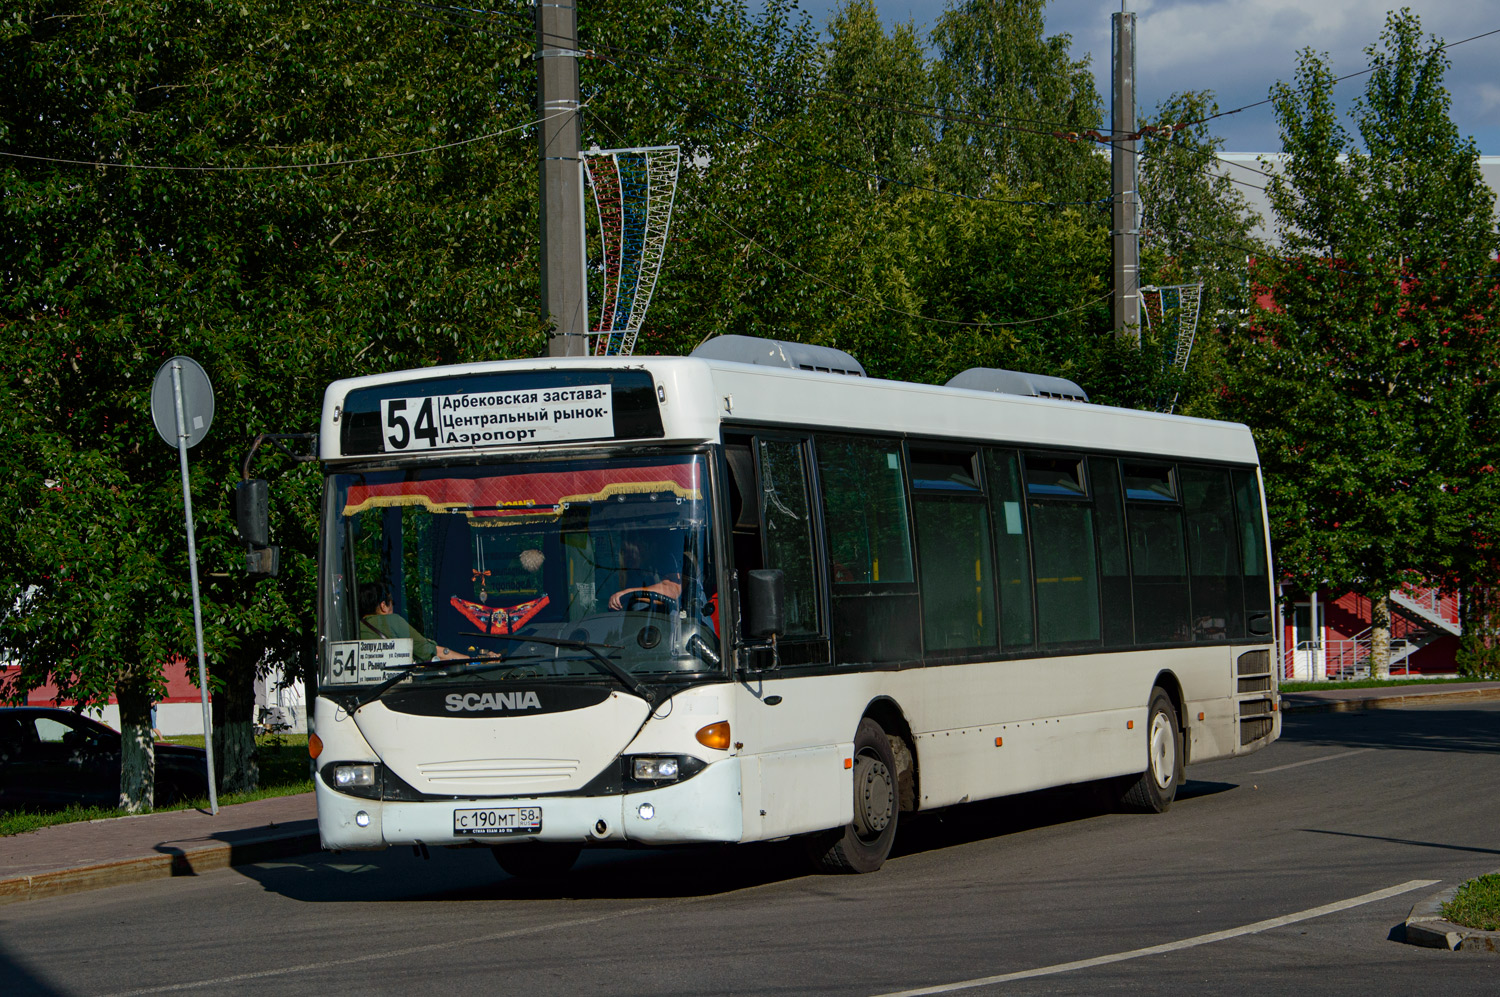 Пензенская вобласць, Scania OmniLink I (Скания-Питер) № С 190 МТ 58